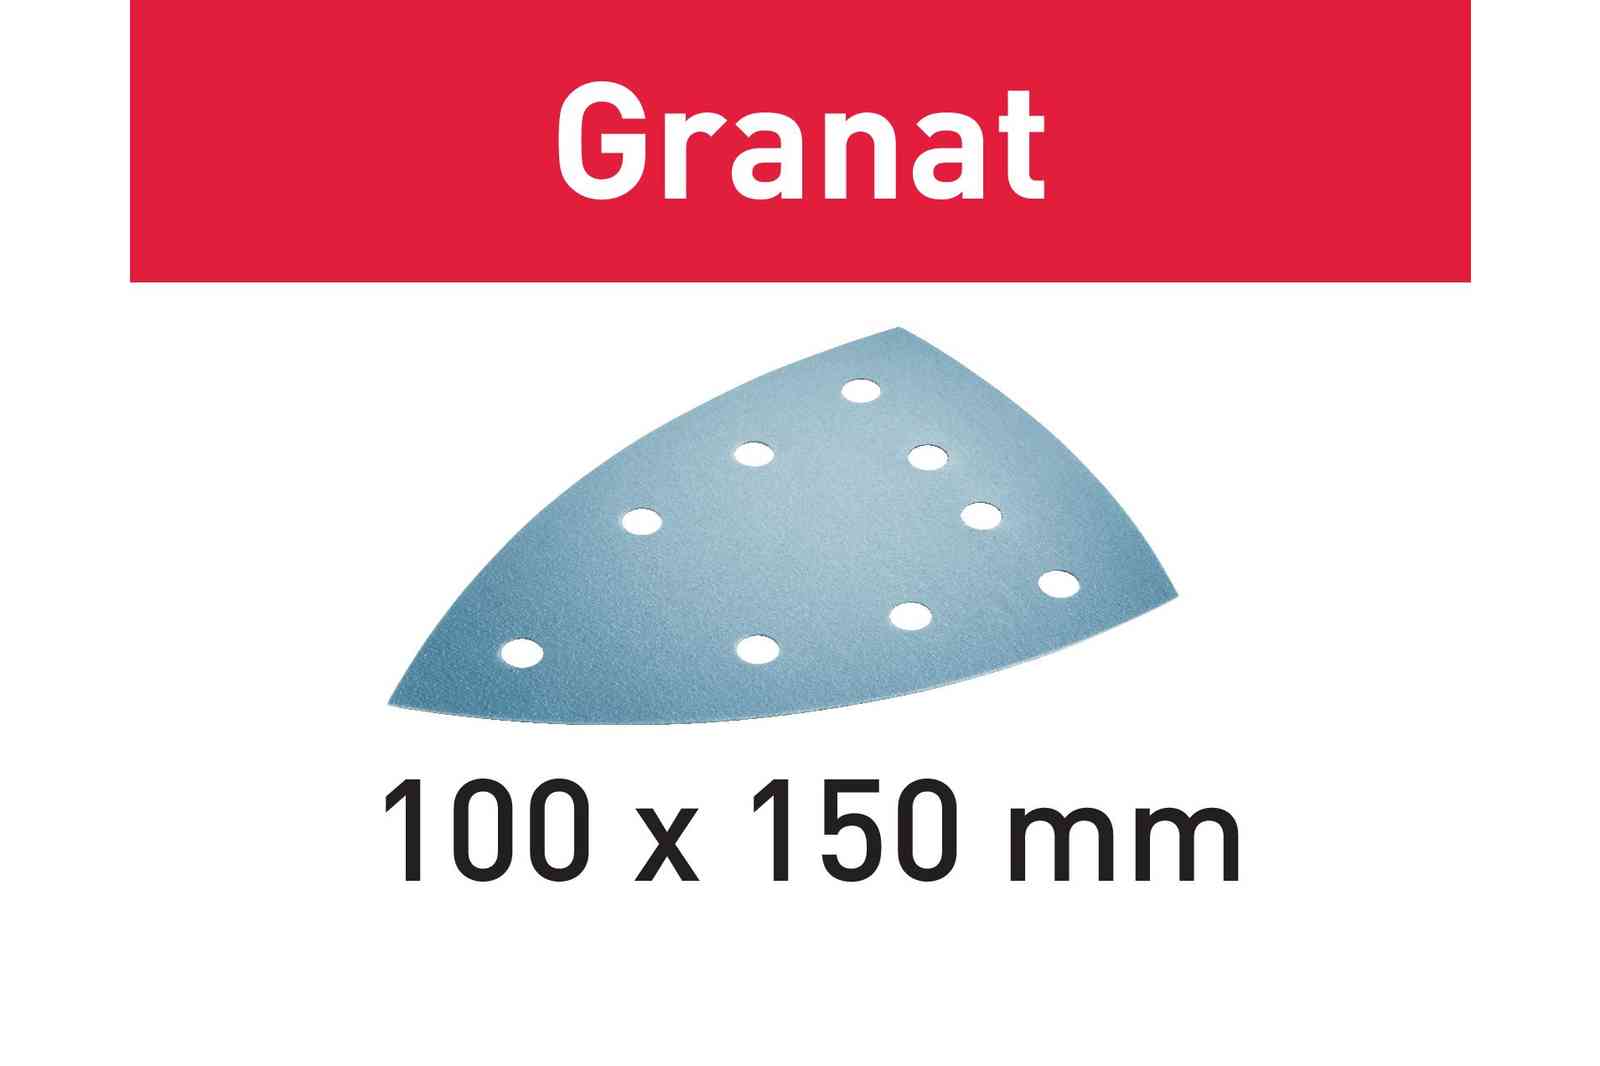 Festool Schuurpapier STF DELTA/9 P240 GR/100 Granat 577550